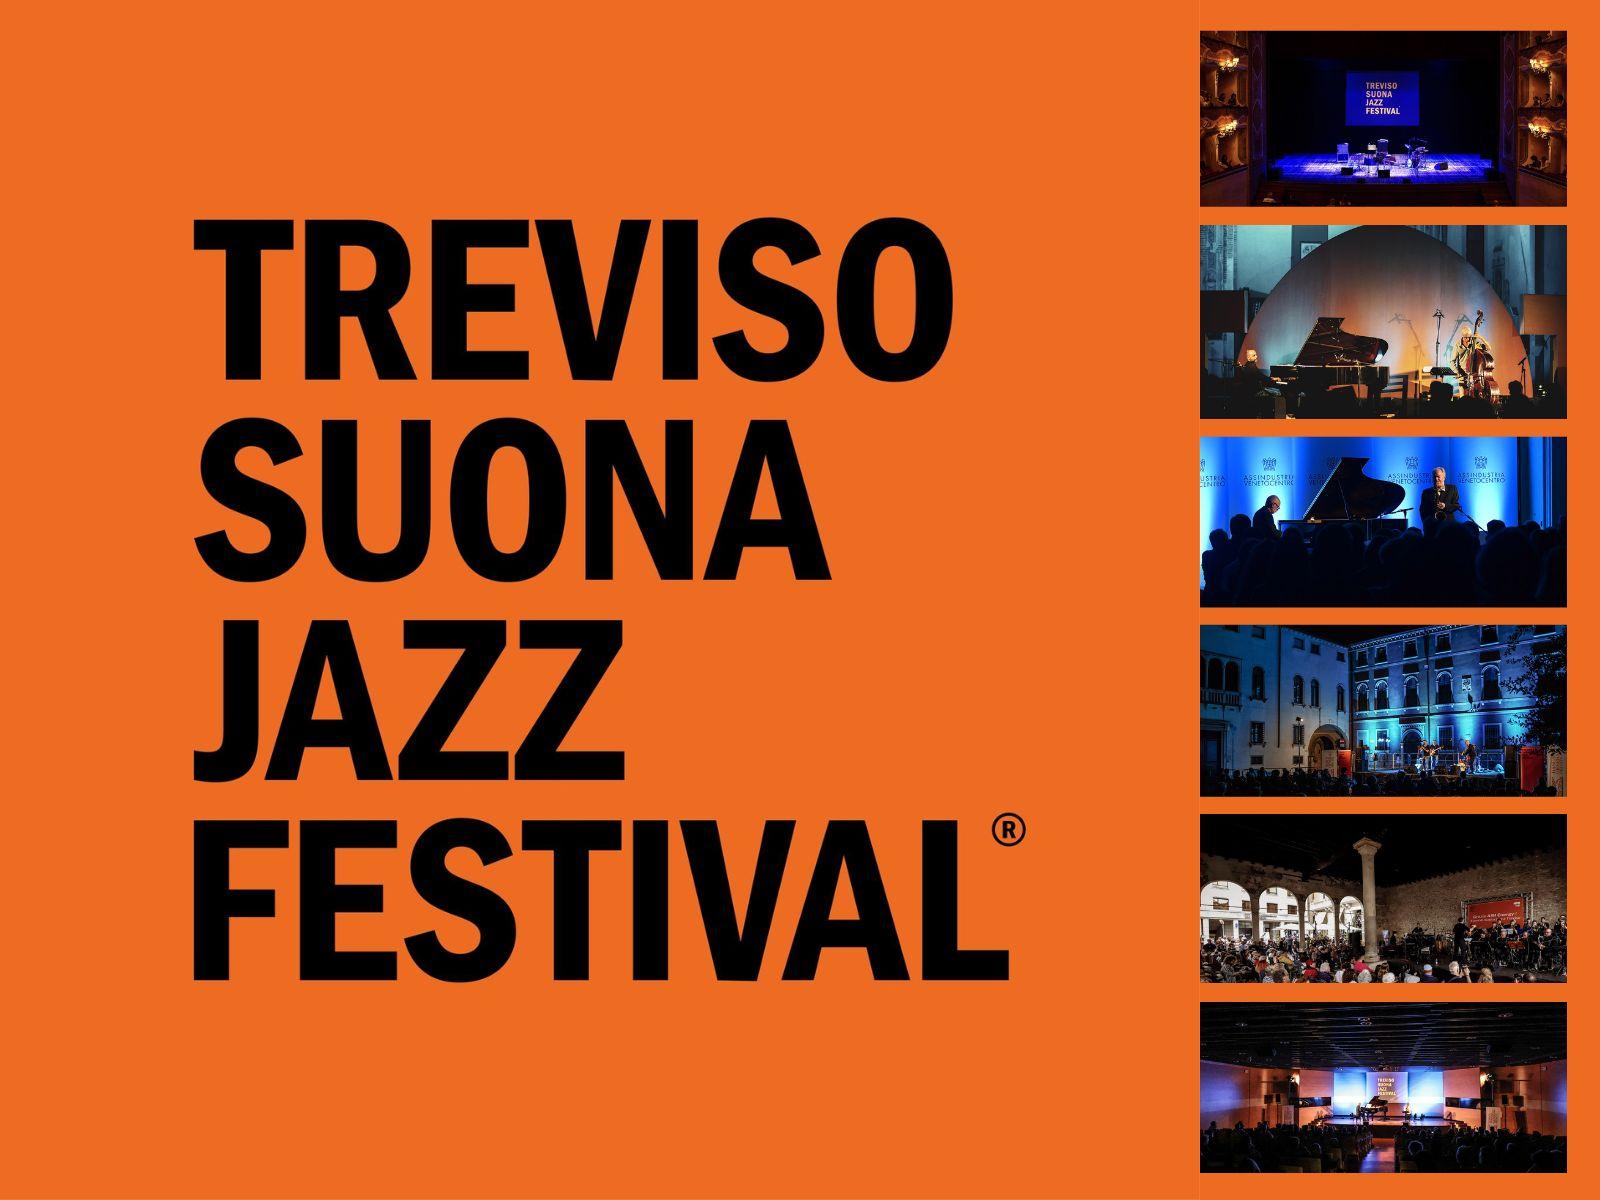 Treviso Suona Jazz Festival 